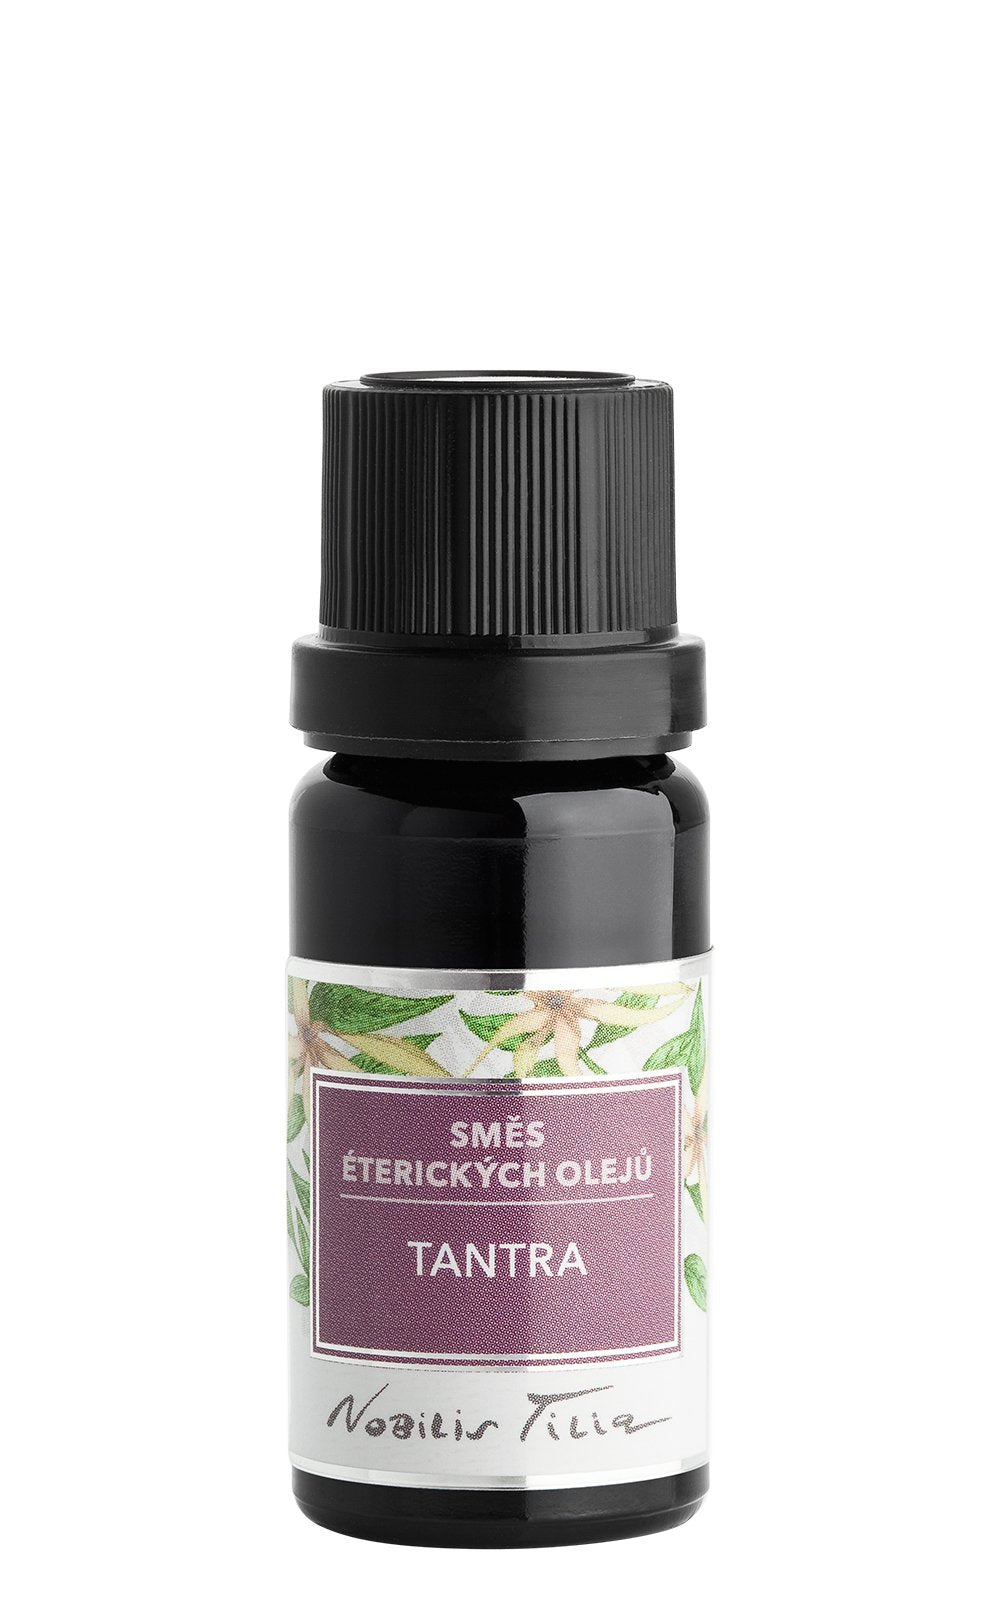 Nobilis Tilia Směs éterických olejů Tantra (10 ml) - afrodiziakální a euforizující účinky Nobilis Tilia